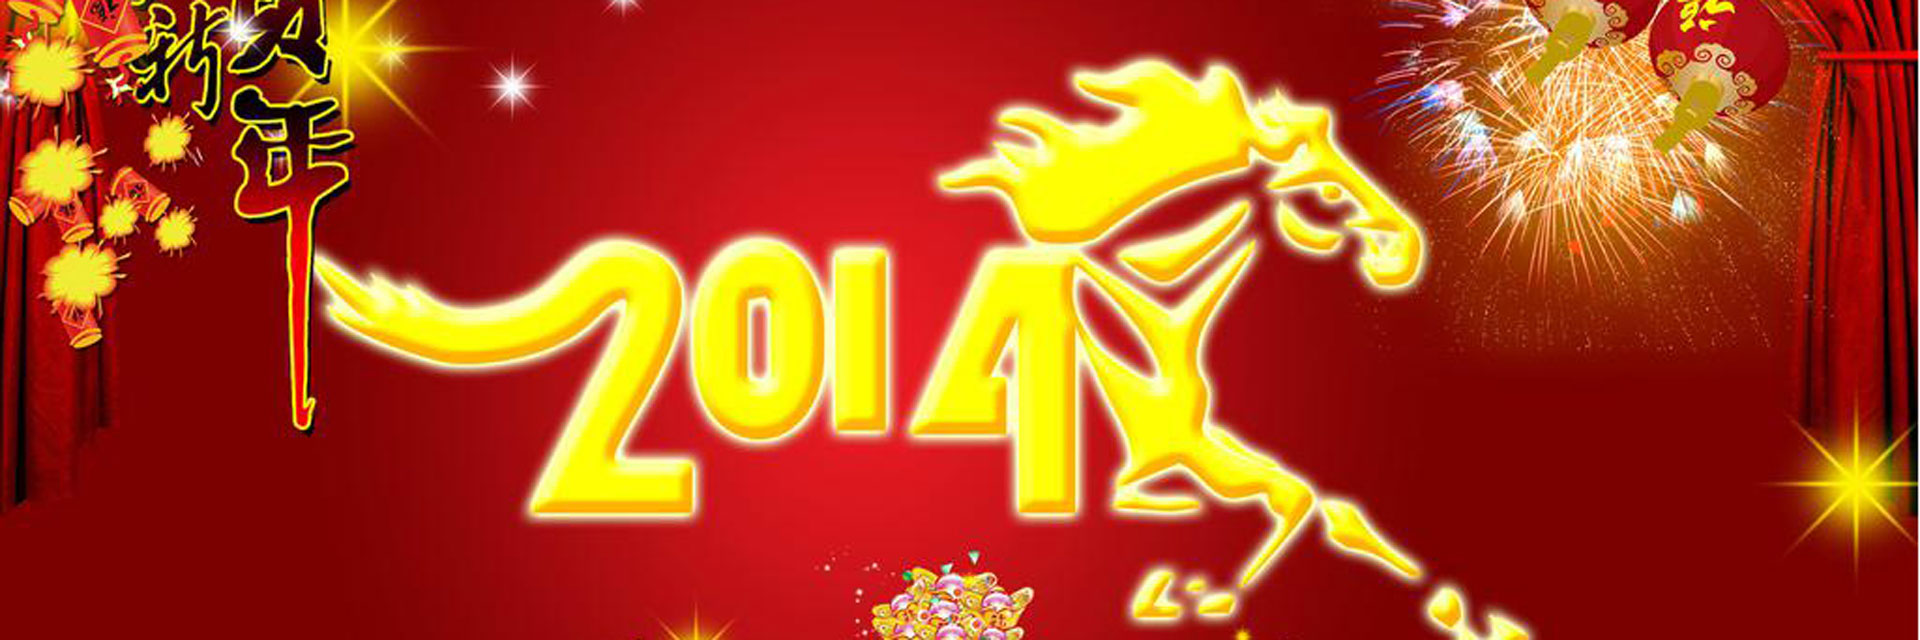 Offre spéciale ThéCâlin du nouvel an chinois 2014.